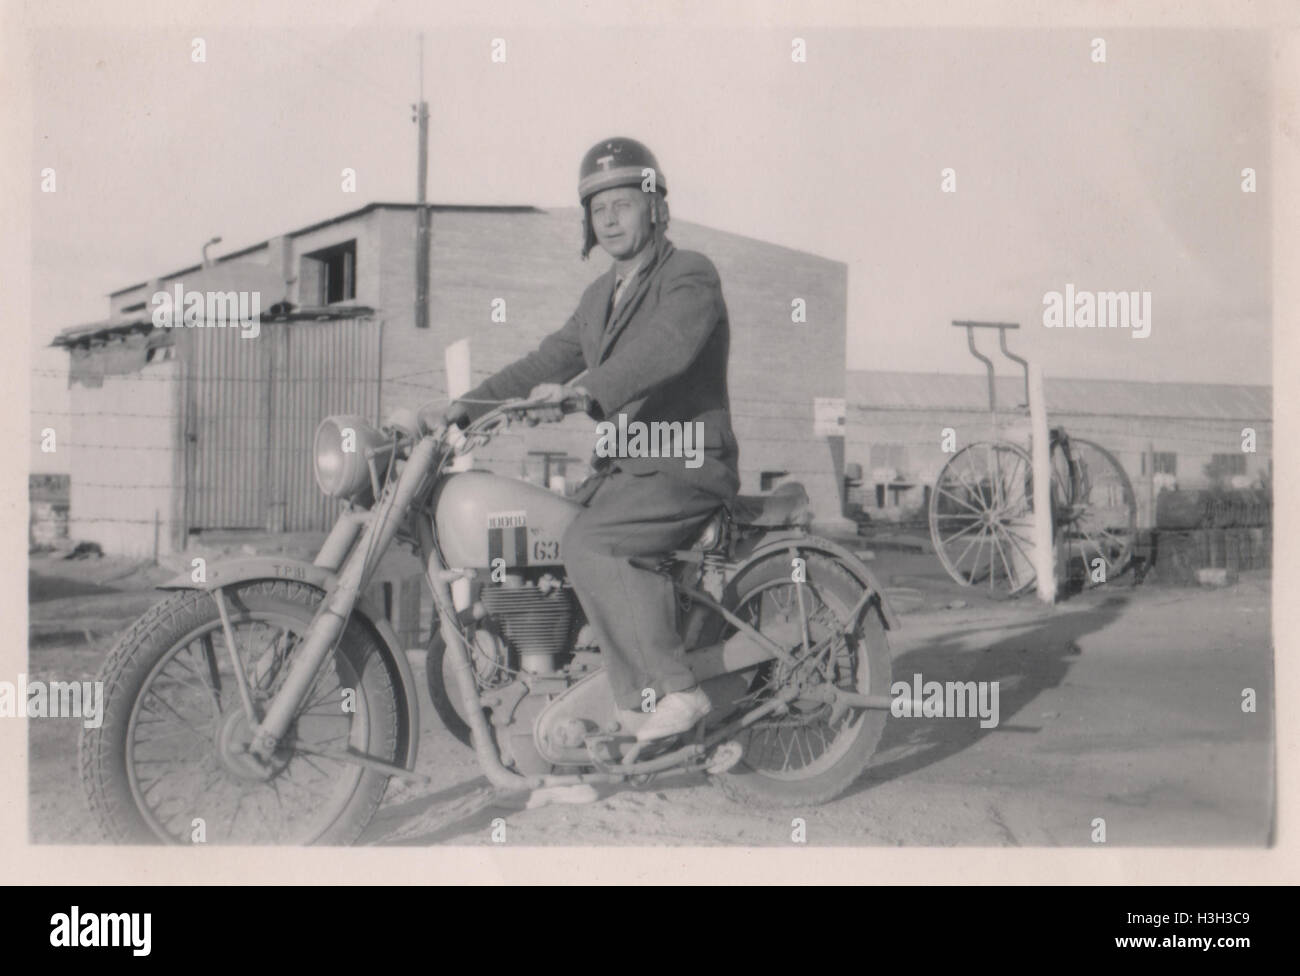 Unidentifizierter britischer Mann, der ein Matchloses Motorrad der G3/L British Army fährt. Foto aufgenommen im Lager des Royal Army Ordnance Corps (RAOC) des 10 Base Ordnance Depot im Gebiet Geneifa Ismailia nahe dem Suez-Kanal 1952 Stockfoto